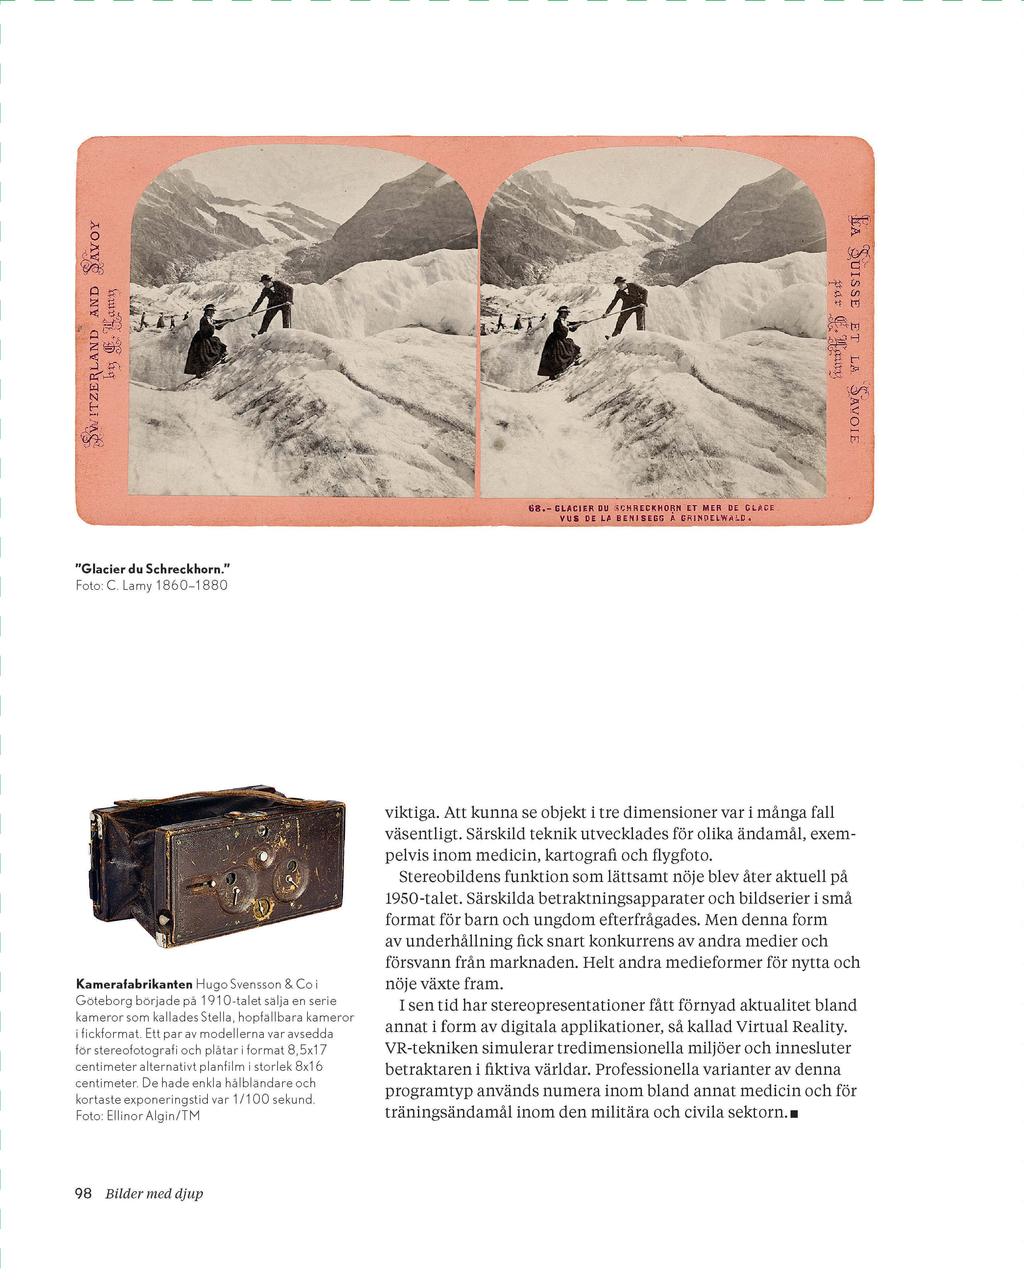 "Glacier du Schreckhorn." Foto C Lamy 1860-1880 Kamerafabrikanten Hugo Svensson & Co i Göteborg började på 1910-talet sälja en serie kameror som kallades Stel la, hopfällbara kameror i fickformat.